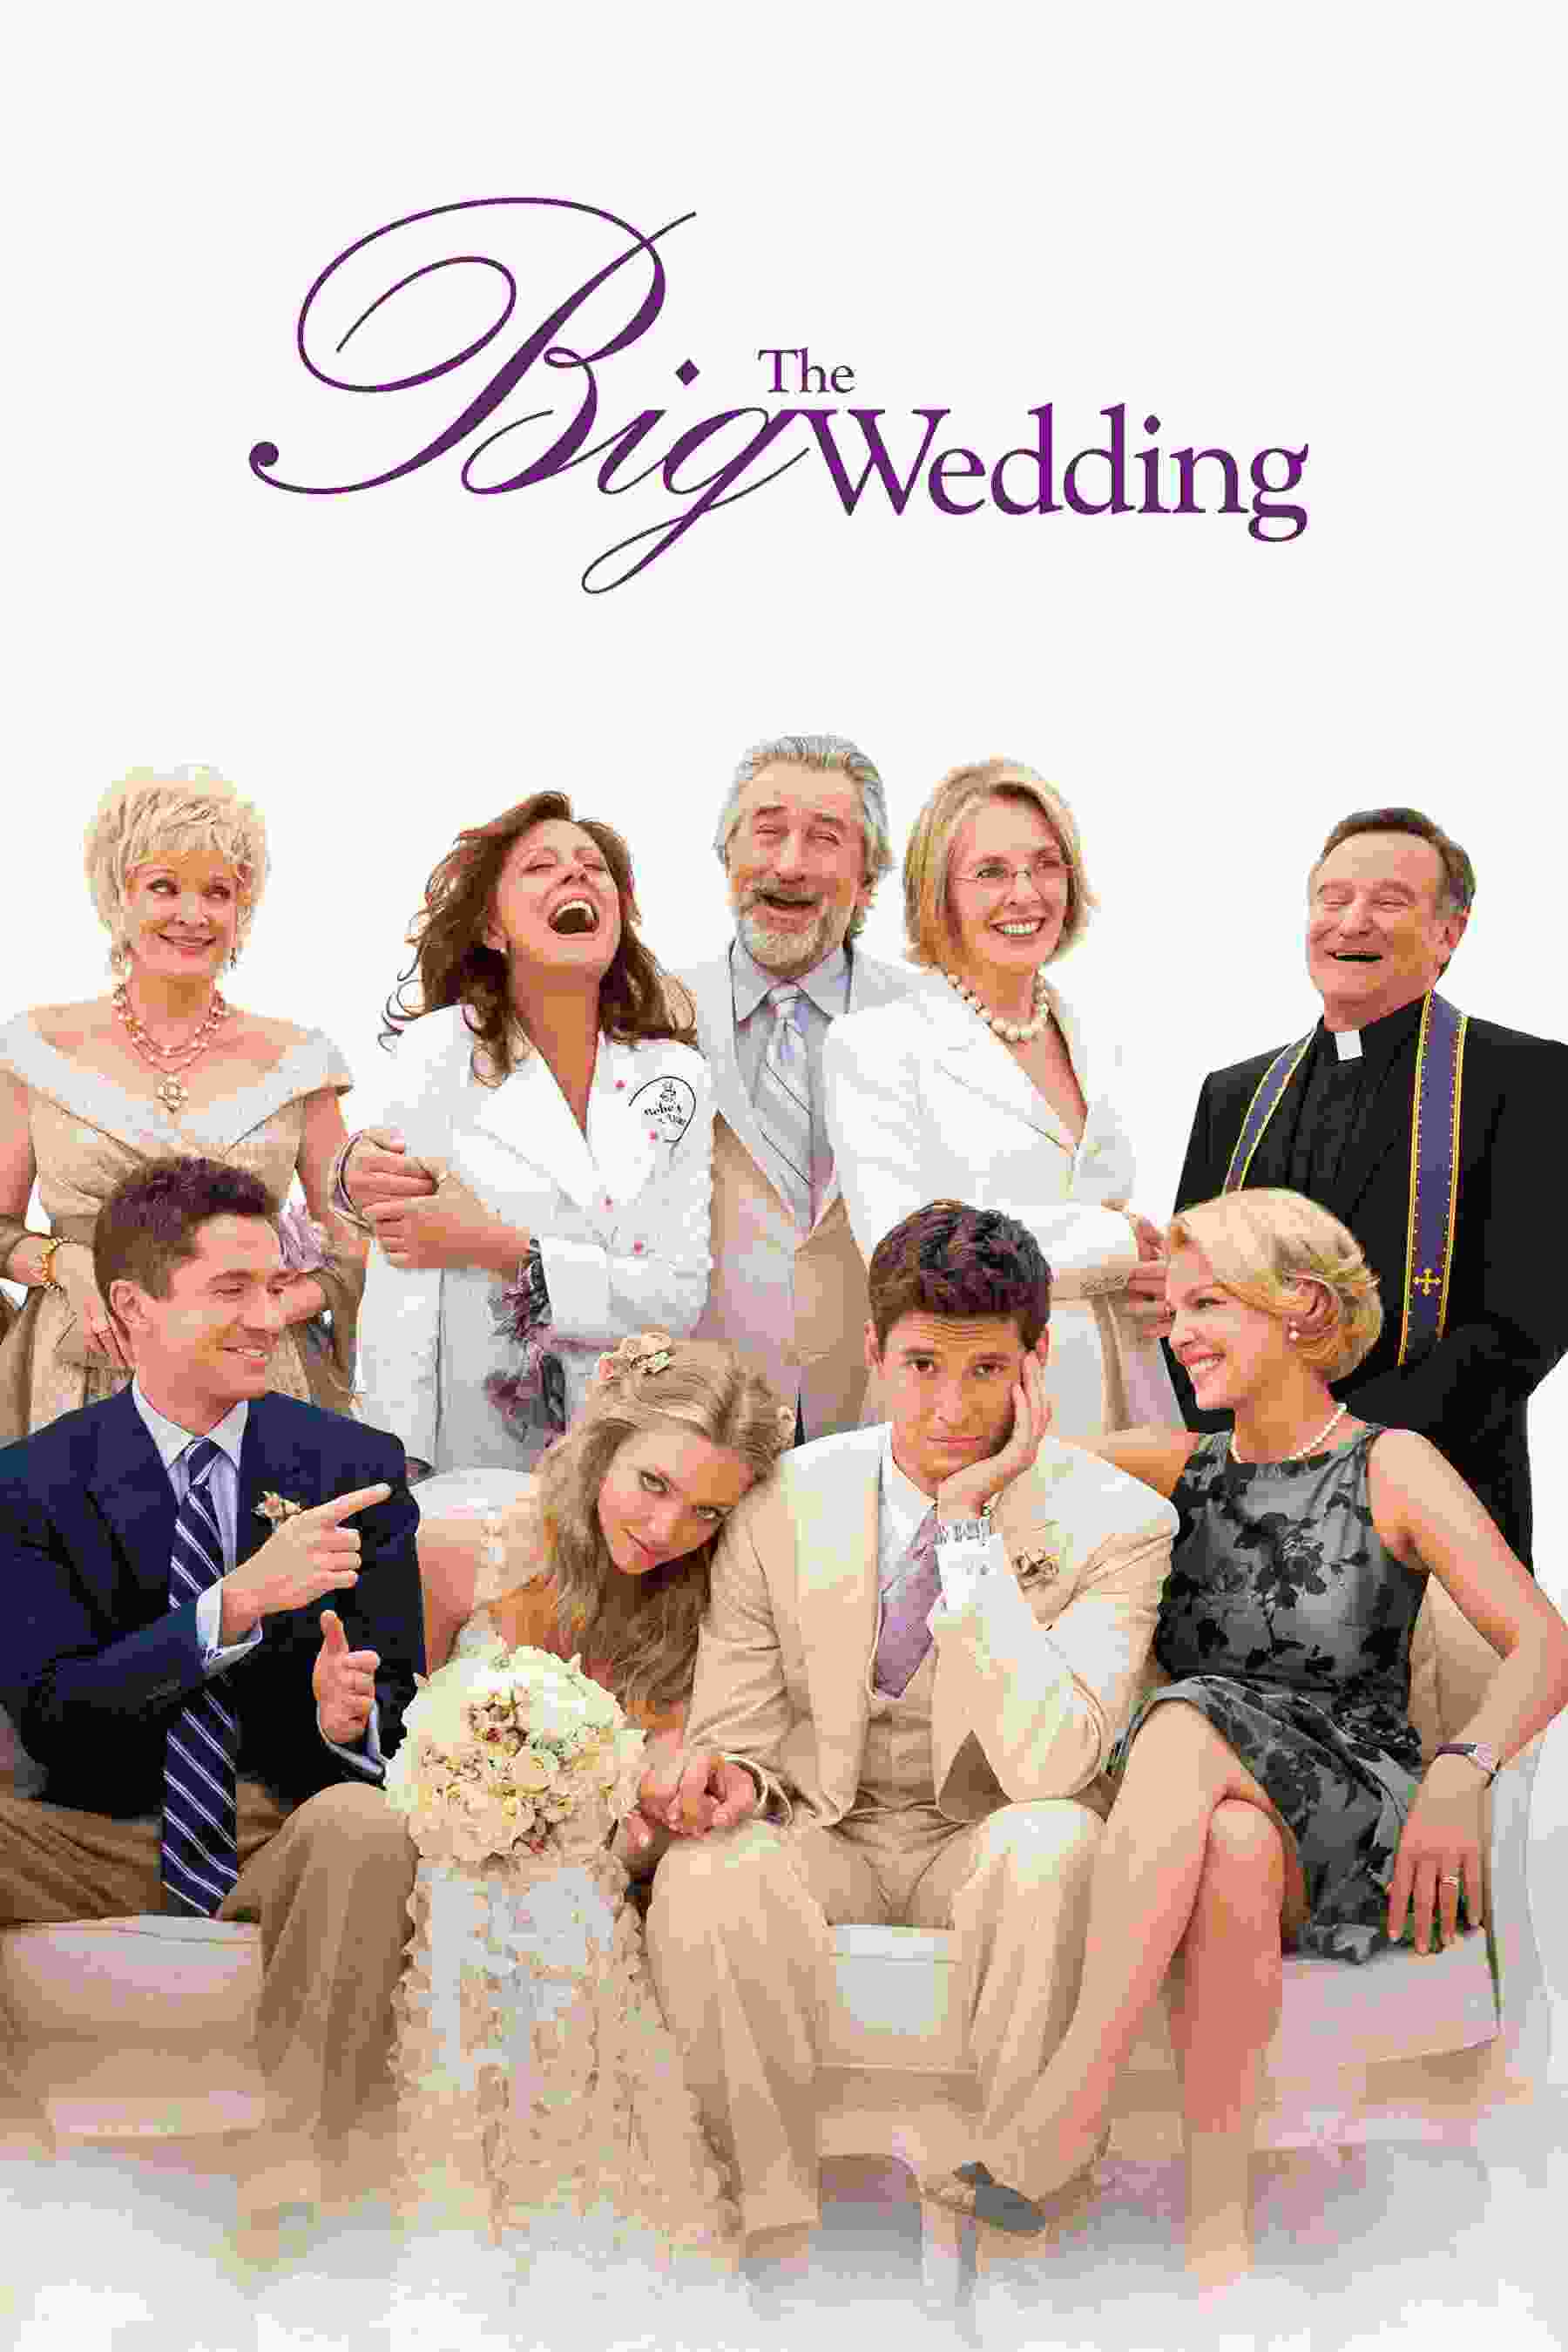 The Big Wedding (2013) Robert De Niro